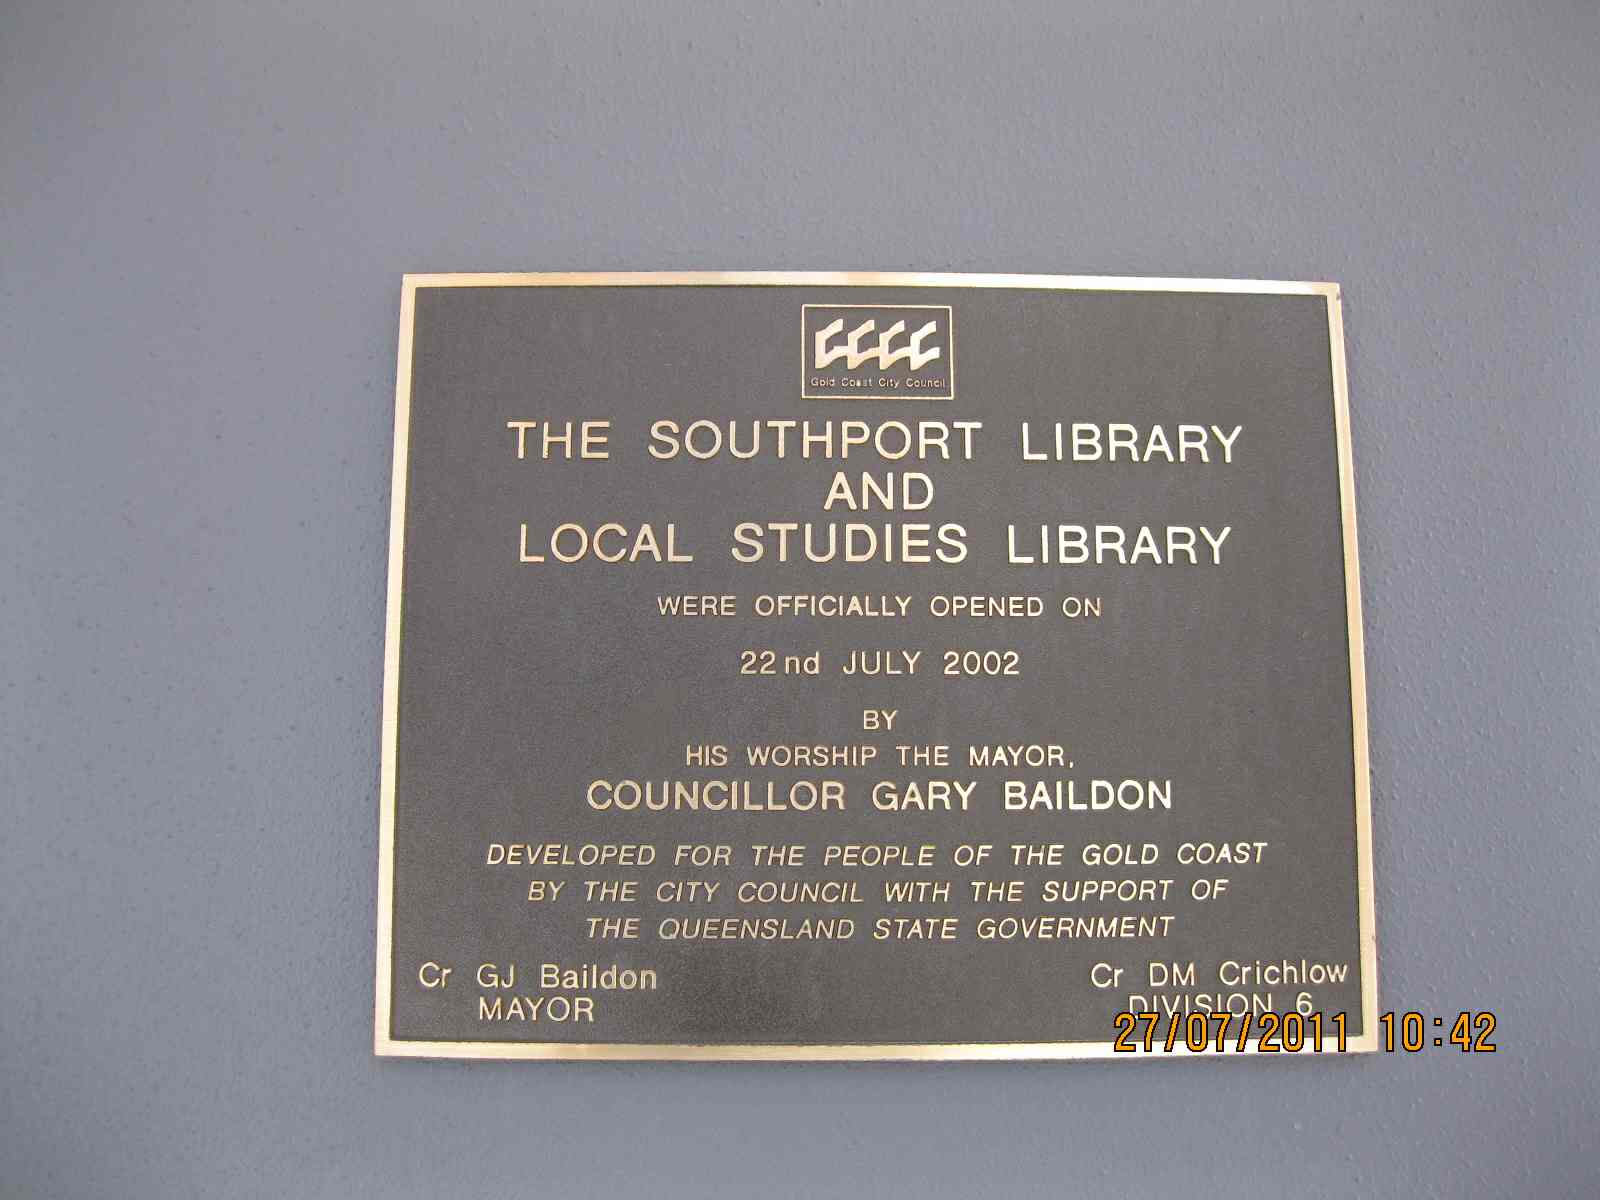 تابلوی ورودی کتابخانه شهر گلد کوست در استرالیا